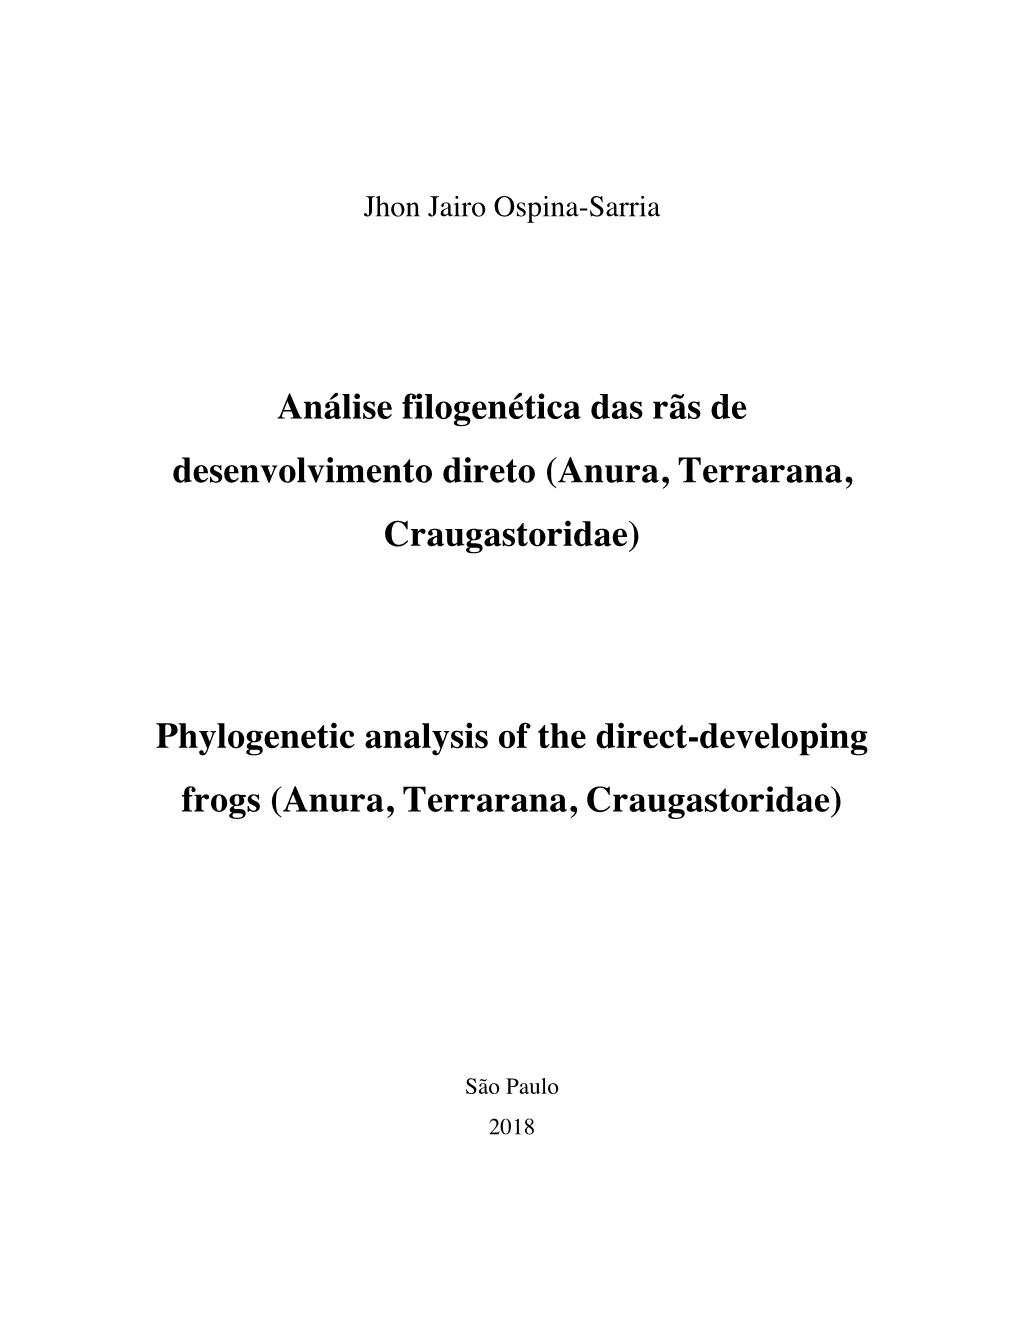 (Anura, Terrarana, Craugastoridae) Phylogenetic Analysis of the Direct